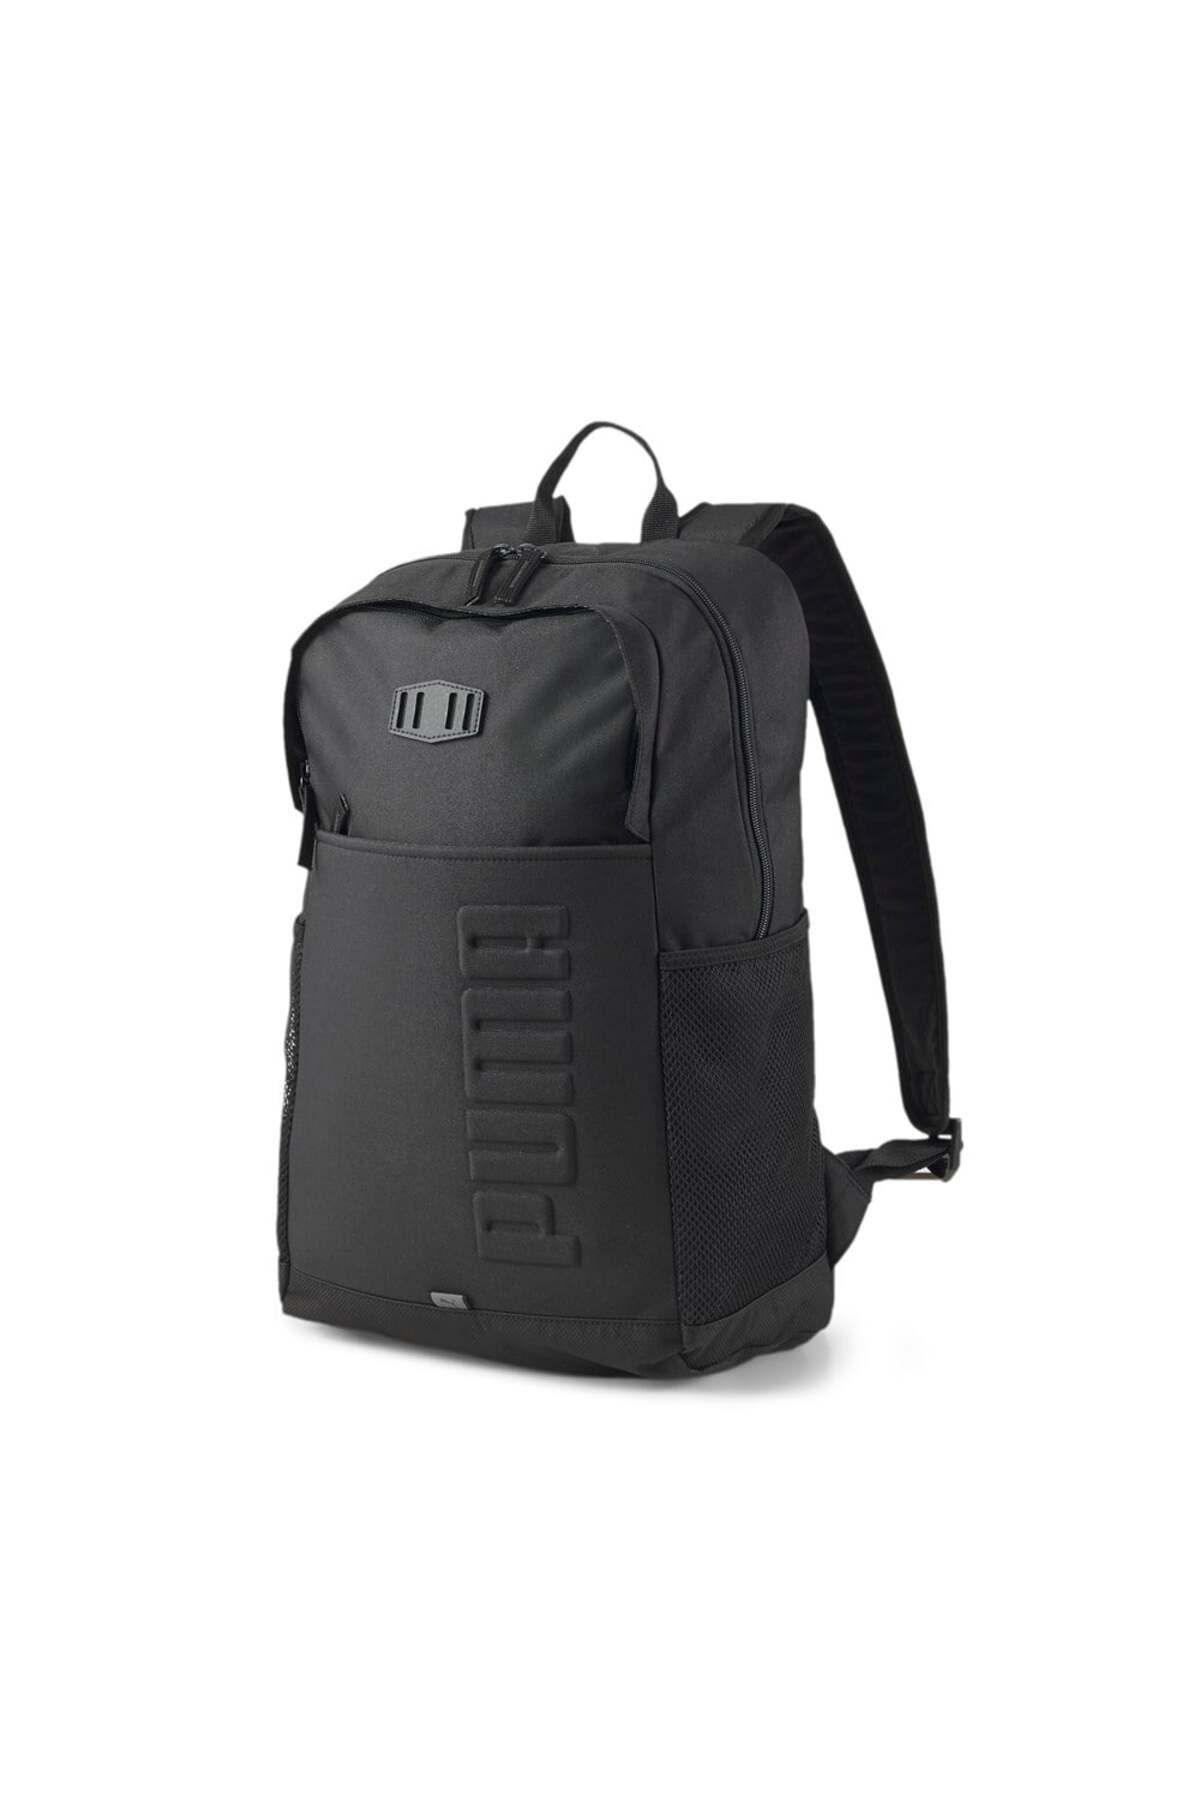 Puma S Backpack07922201